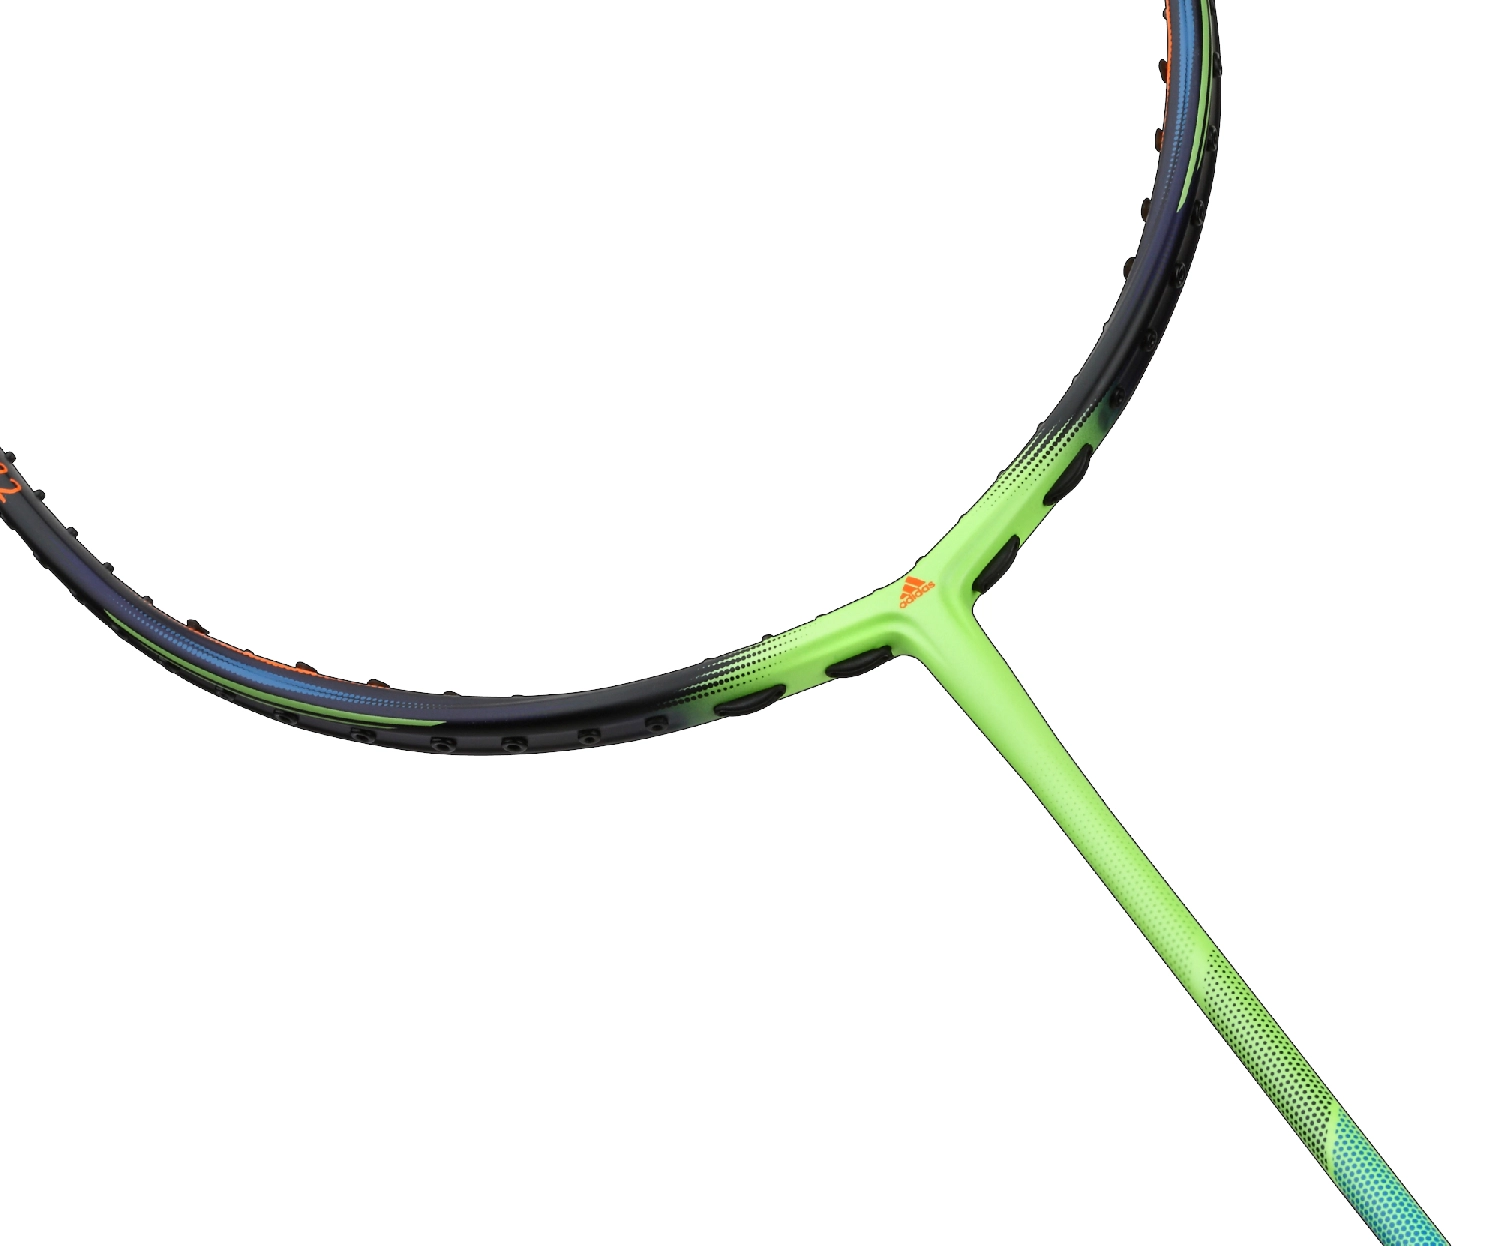 Vợt cầu lông Adidas Spieler E08.2 Signal Green - Đen xanh lá chính hãng